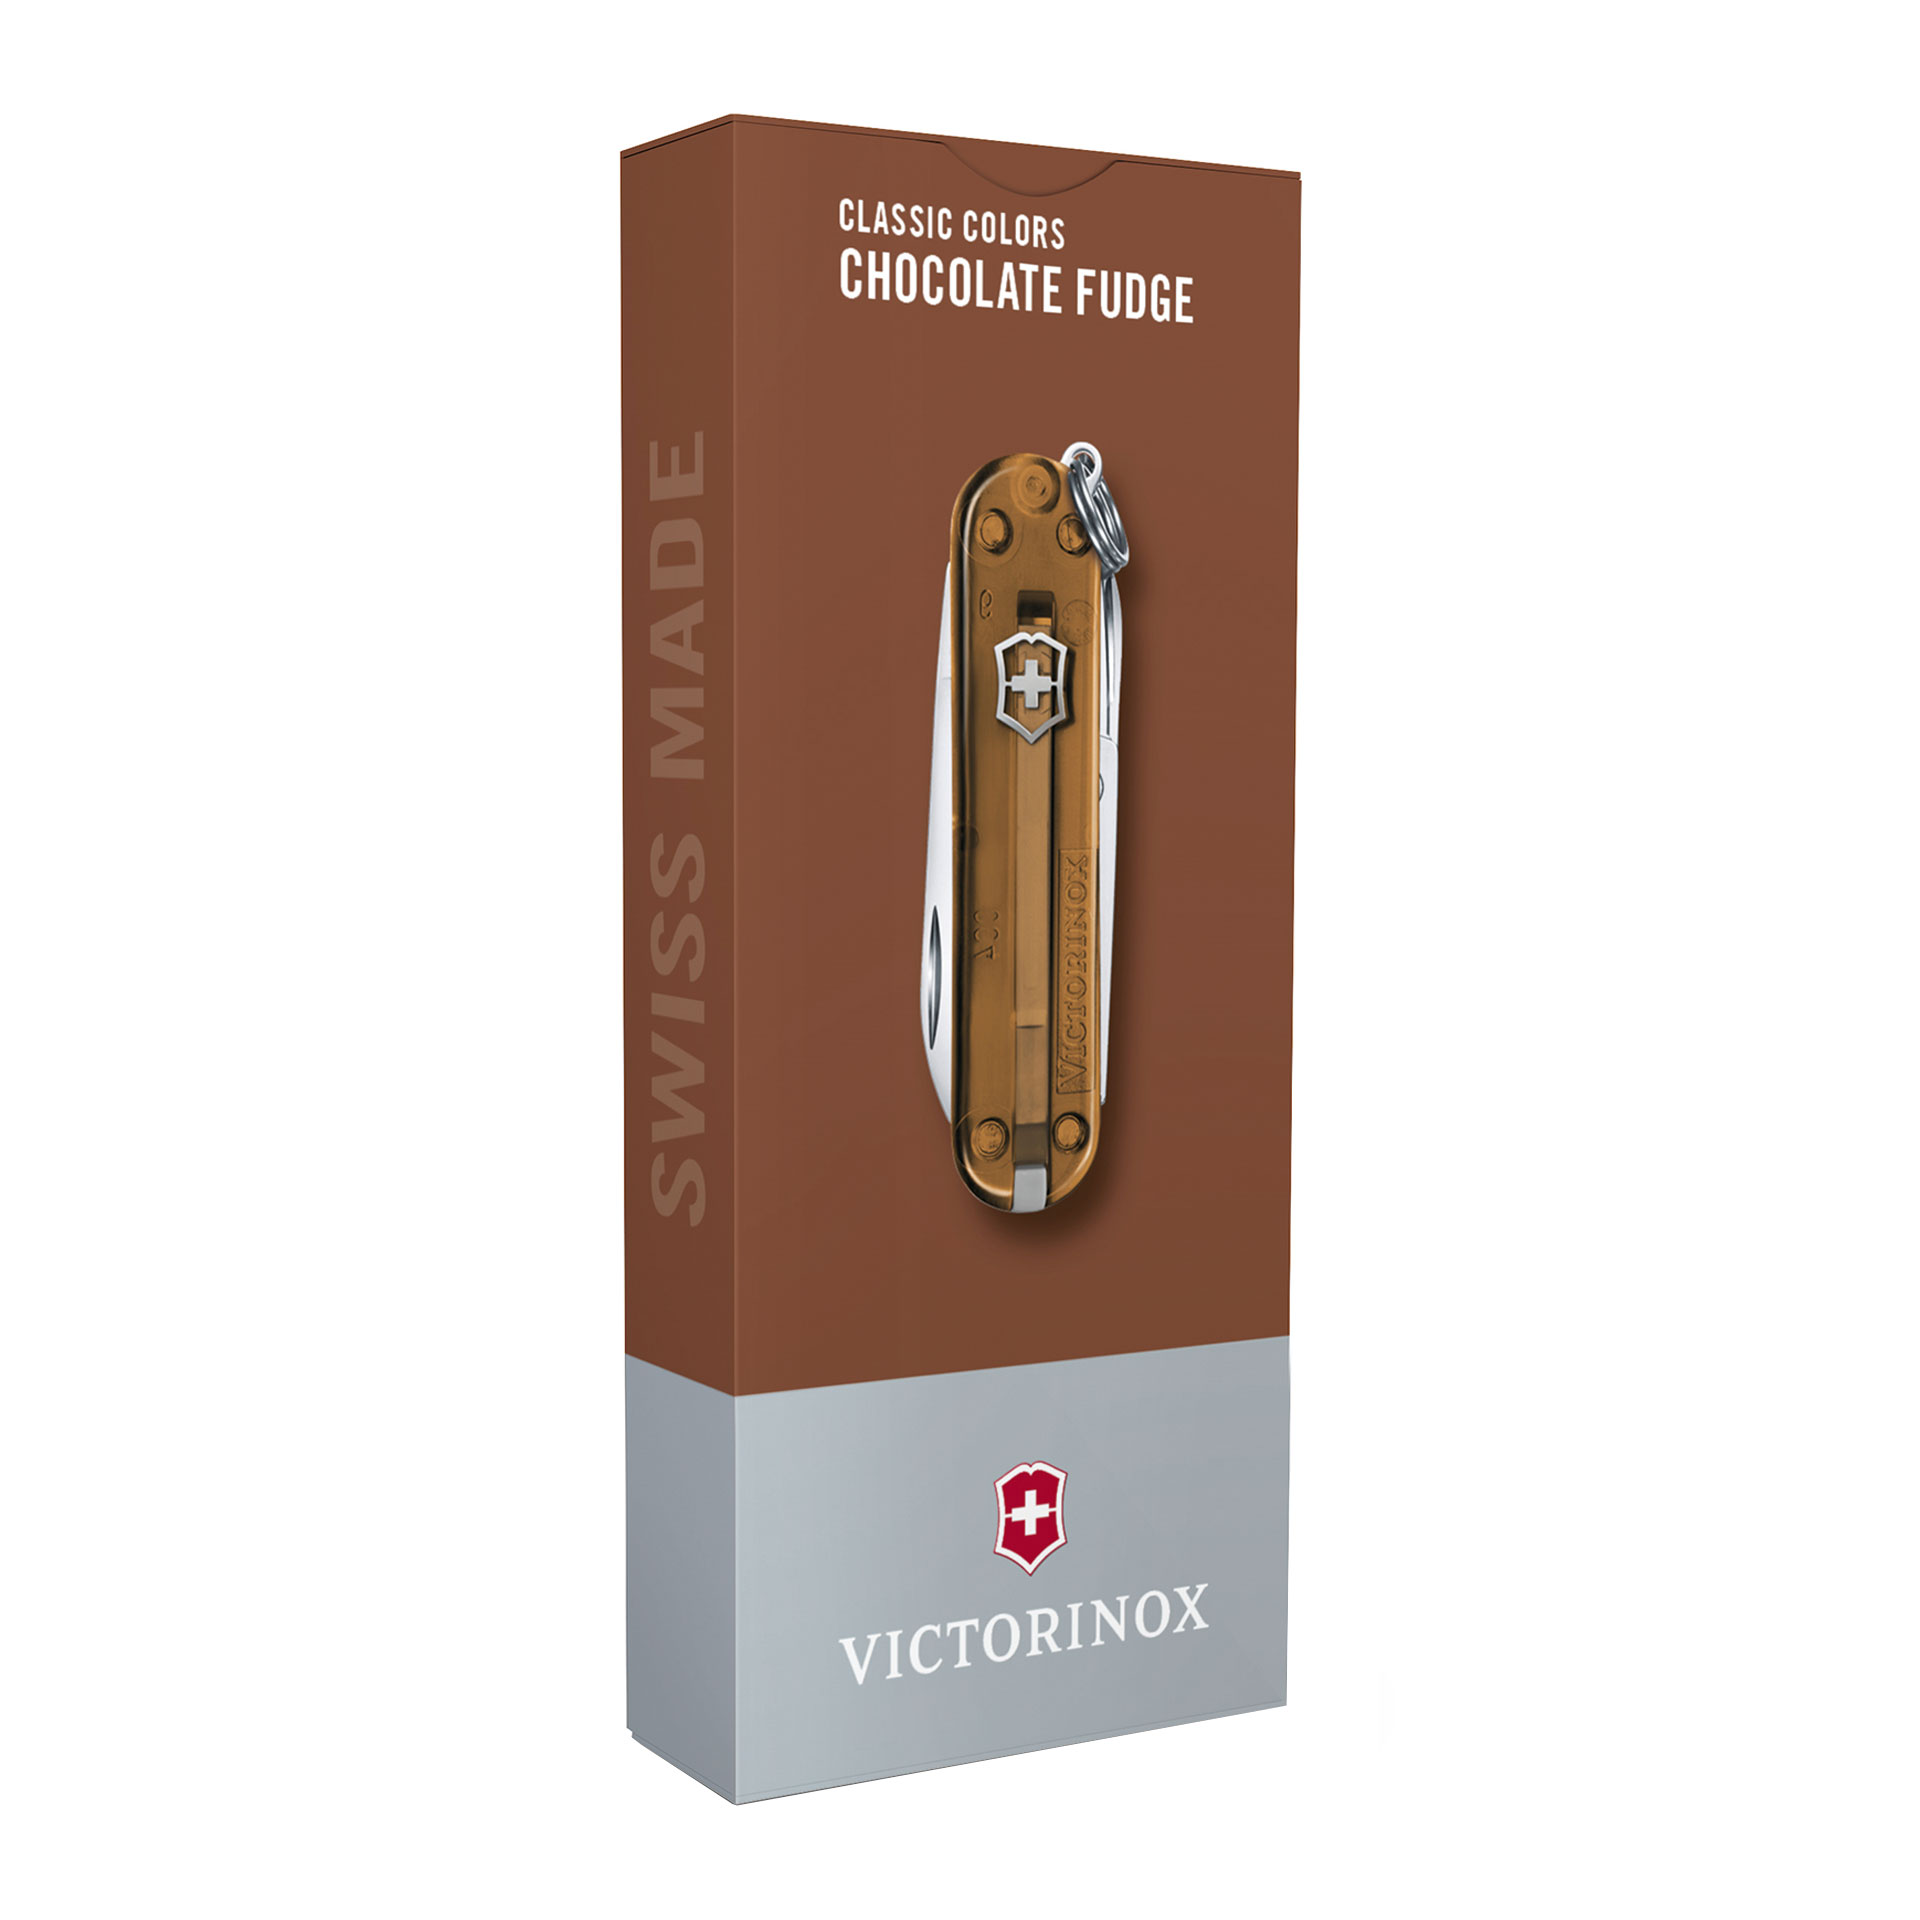 VICTORINOX Classic SD Taschenmesser mit 7 Funktionen 58mm transparent chocolate fudge